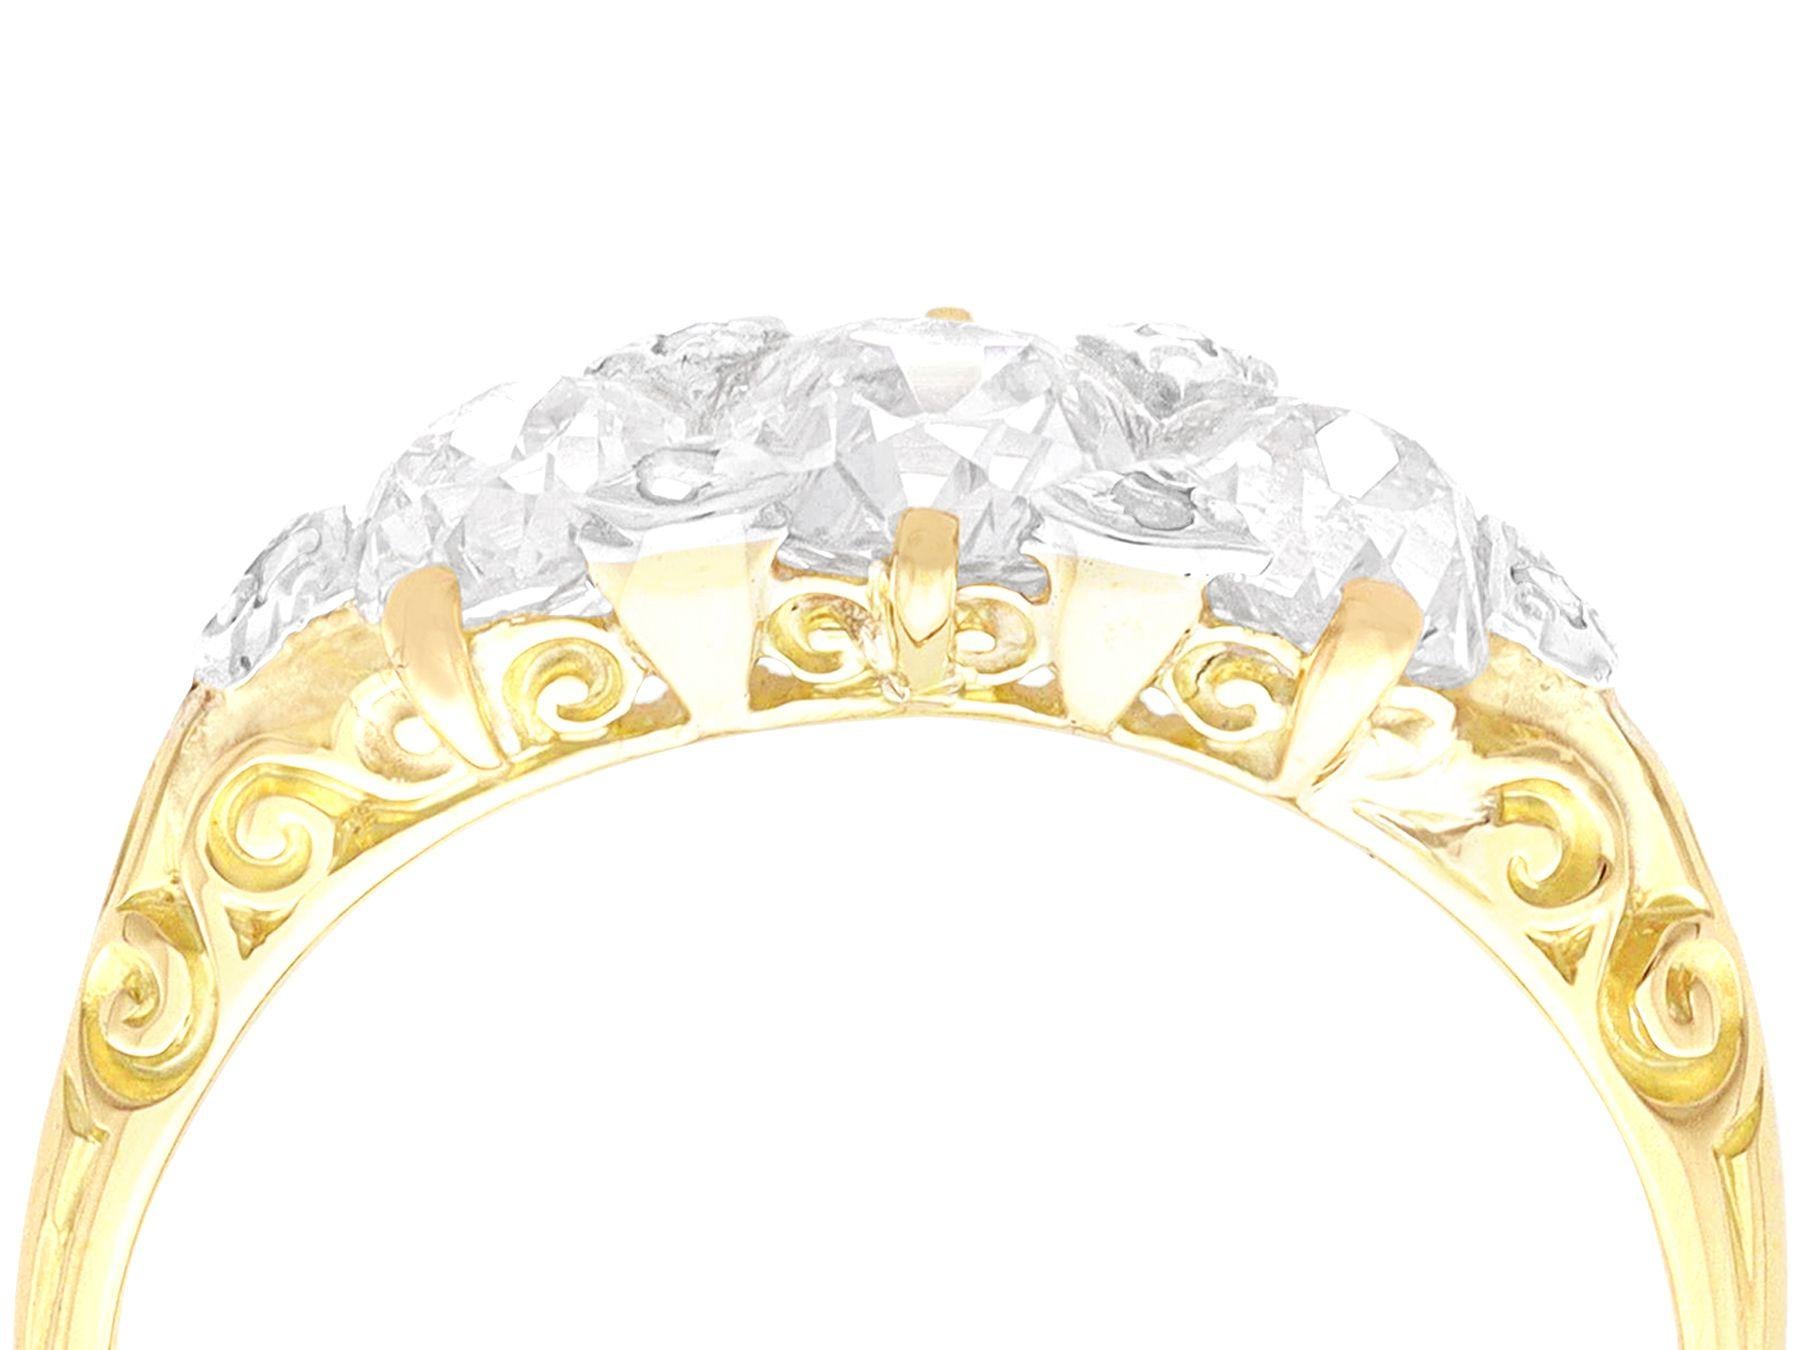 Ein atemberaubender, feiner und beeindruckender antiker Ring aus 2,23 Karat Diamanten, 18 Karat Gelbgold und Silber mit drei Steinen; Teil unserer vielfältigen Vintage-Diamantschmuckkollektionen.

Dieser atemberaubende und beeindruckende